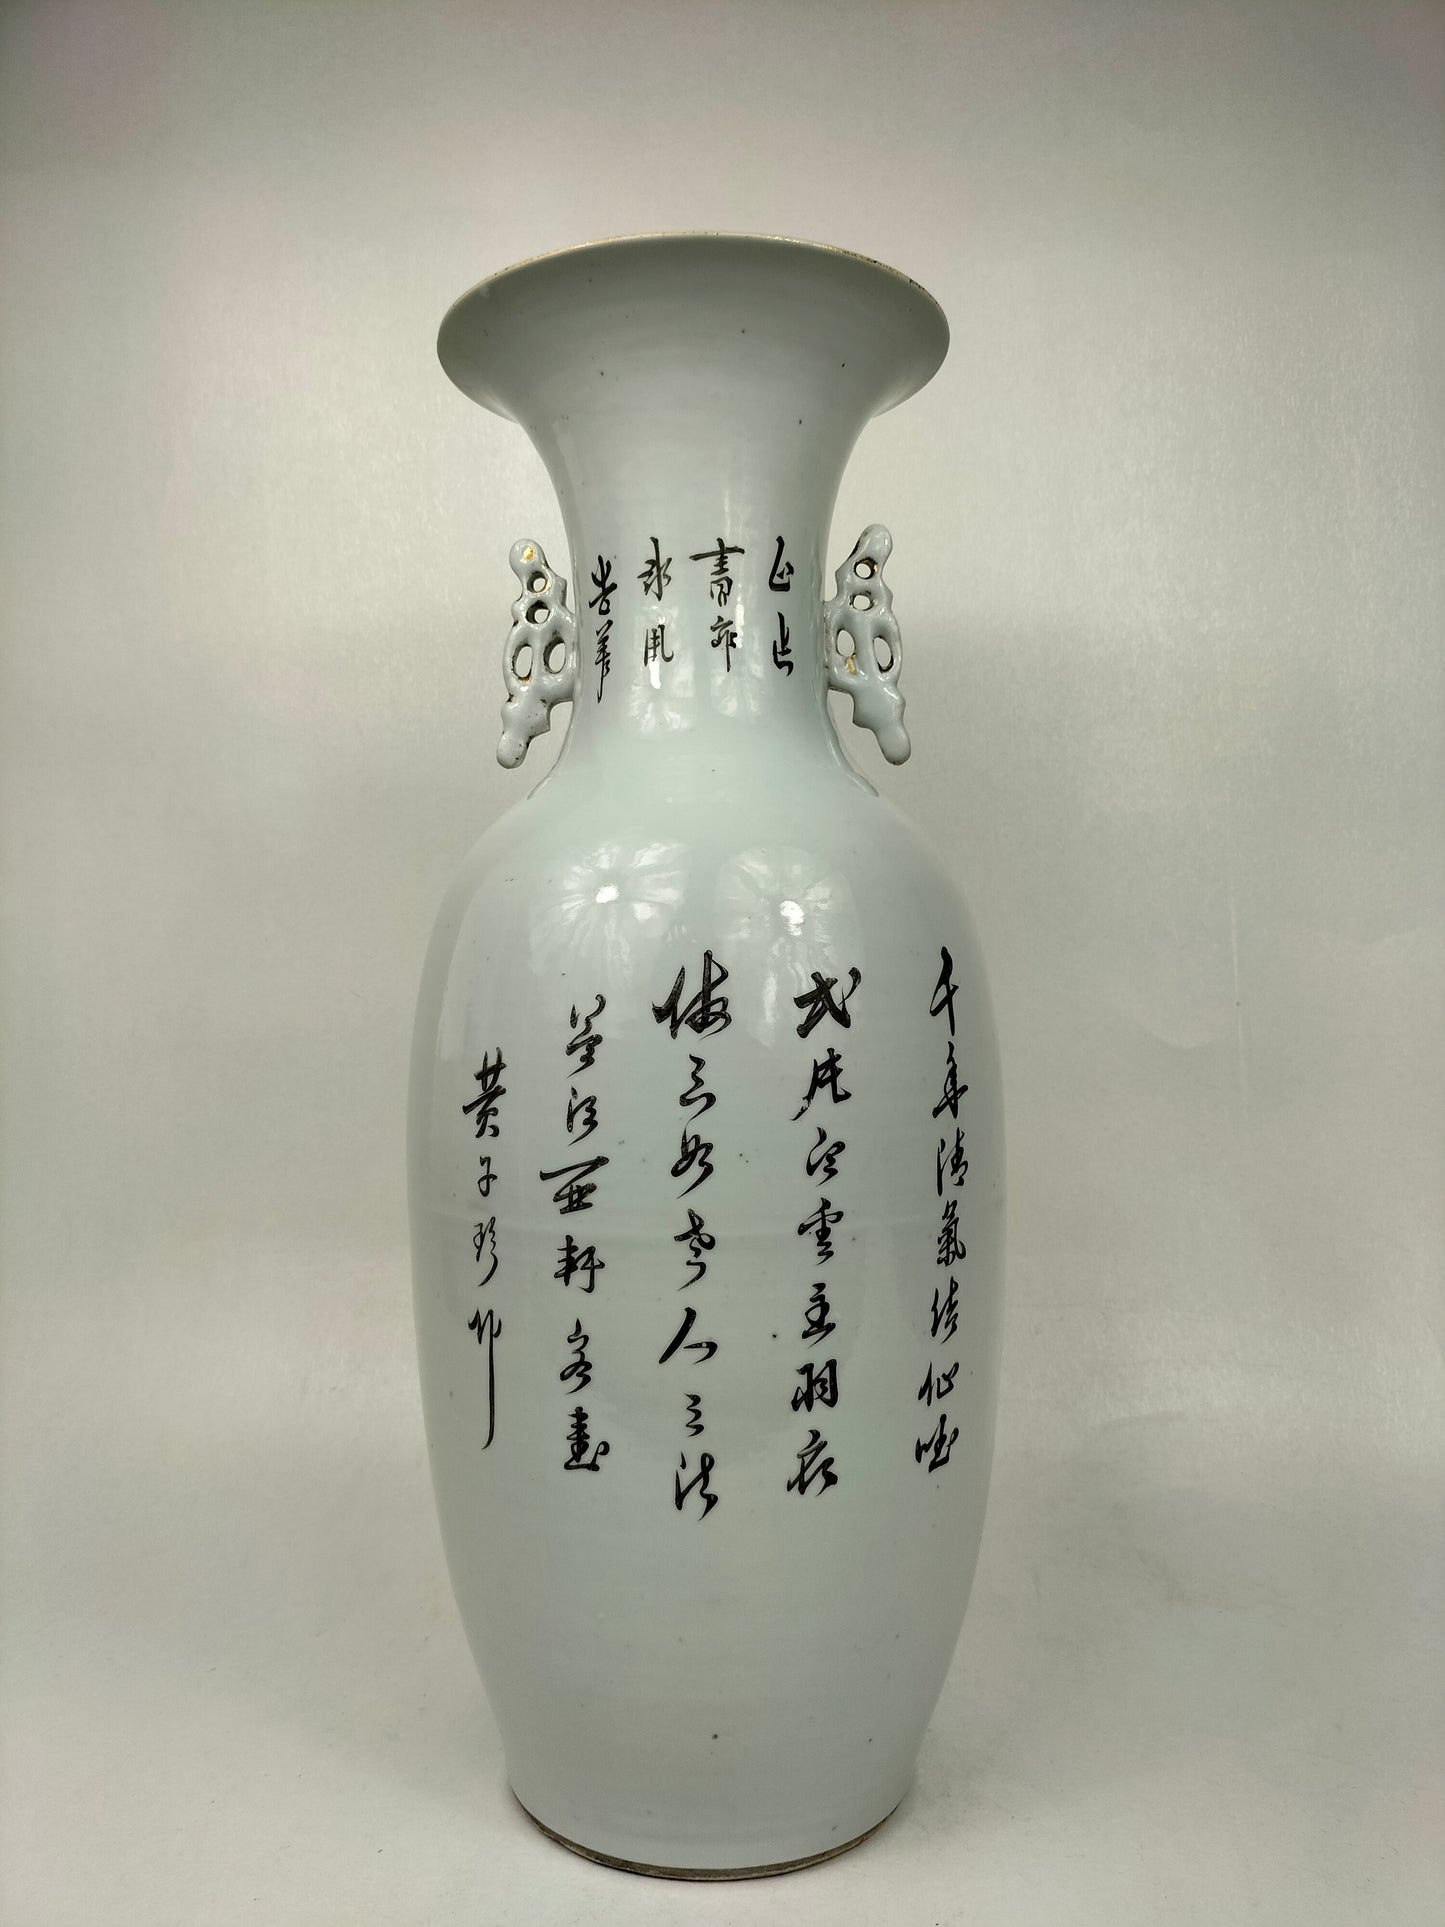 Chiếc bình cổ lớn của Trung Quốc được trang trí bằng những con hạc và hoa // Thời kỳ Cộng hòa (1912-1949)